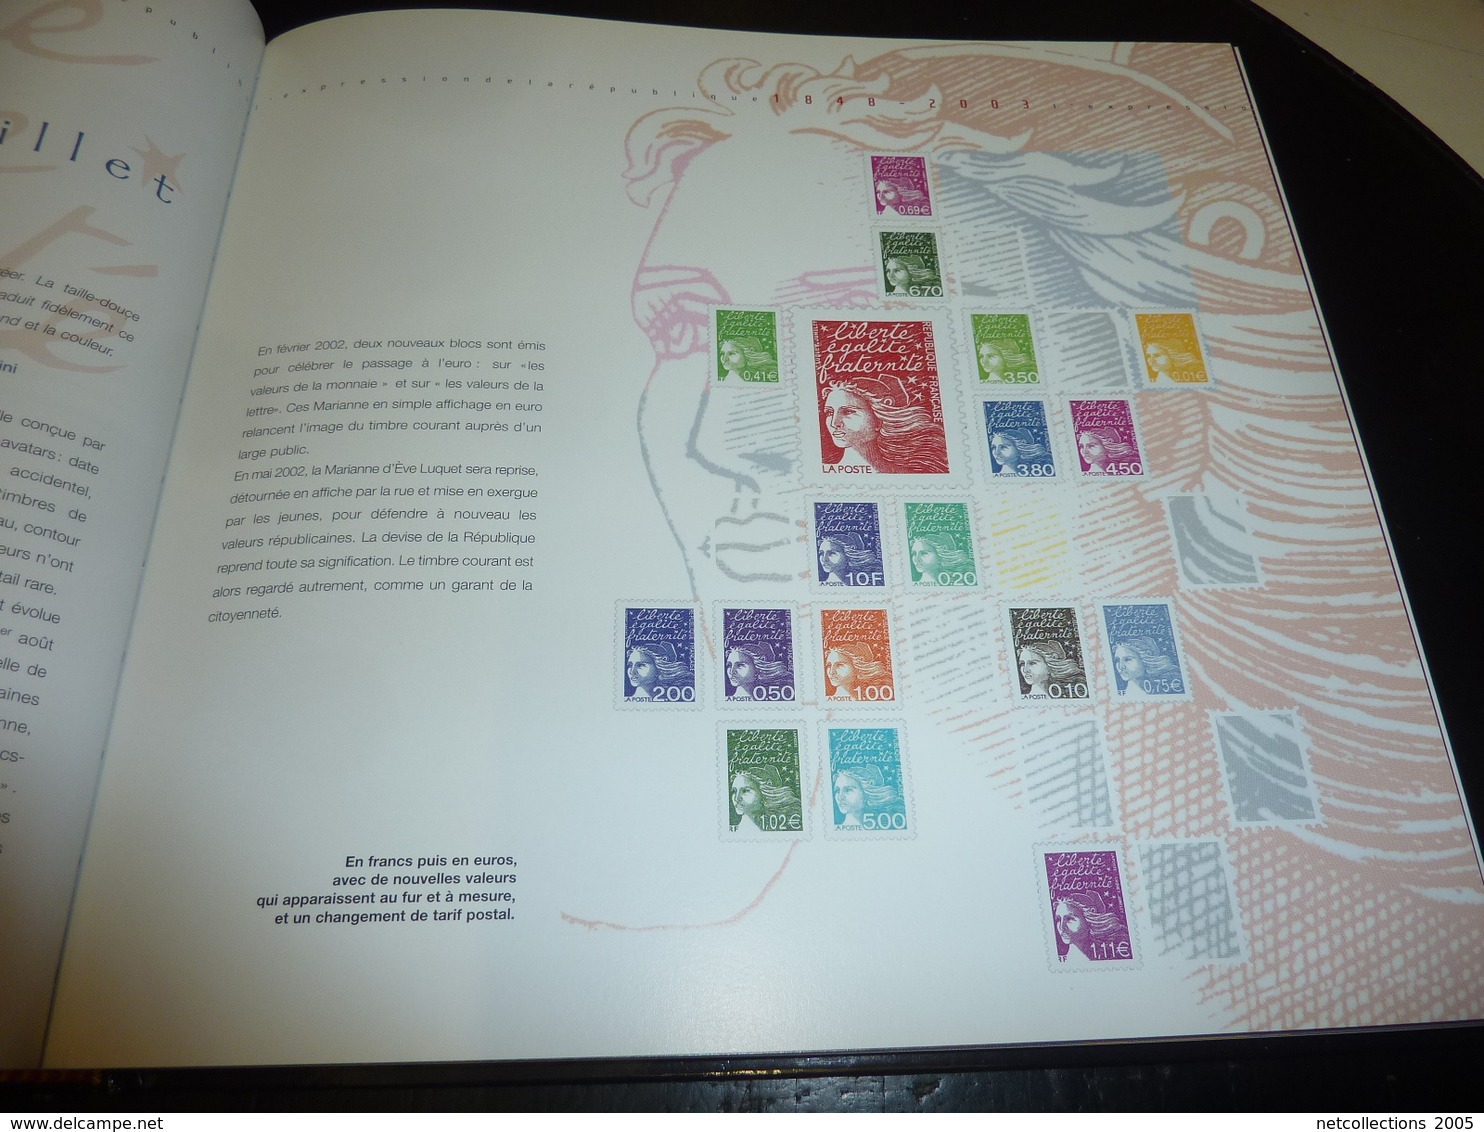 LE TIMBRE POSTE FRANCAIS - IMPRESSIONS EXPRESSIONS : Préface de Max Gallo - avec planche de timbre inédite a l'intérieur